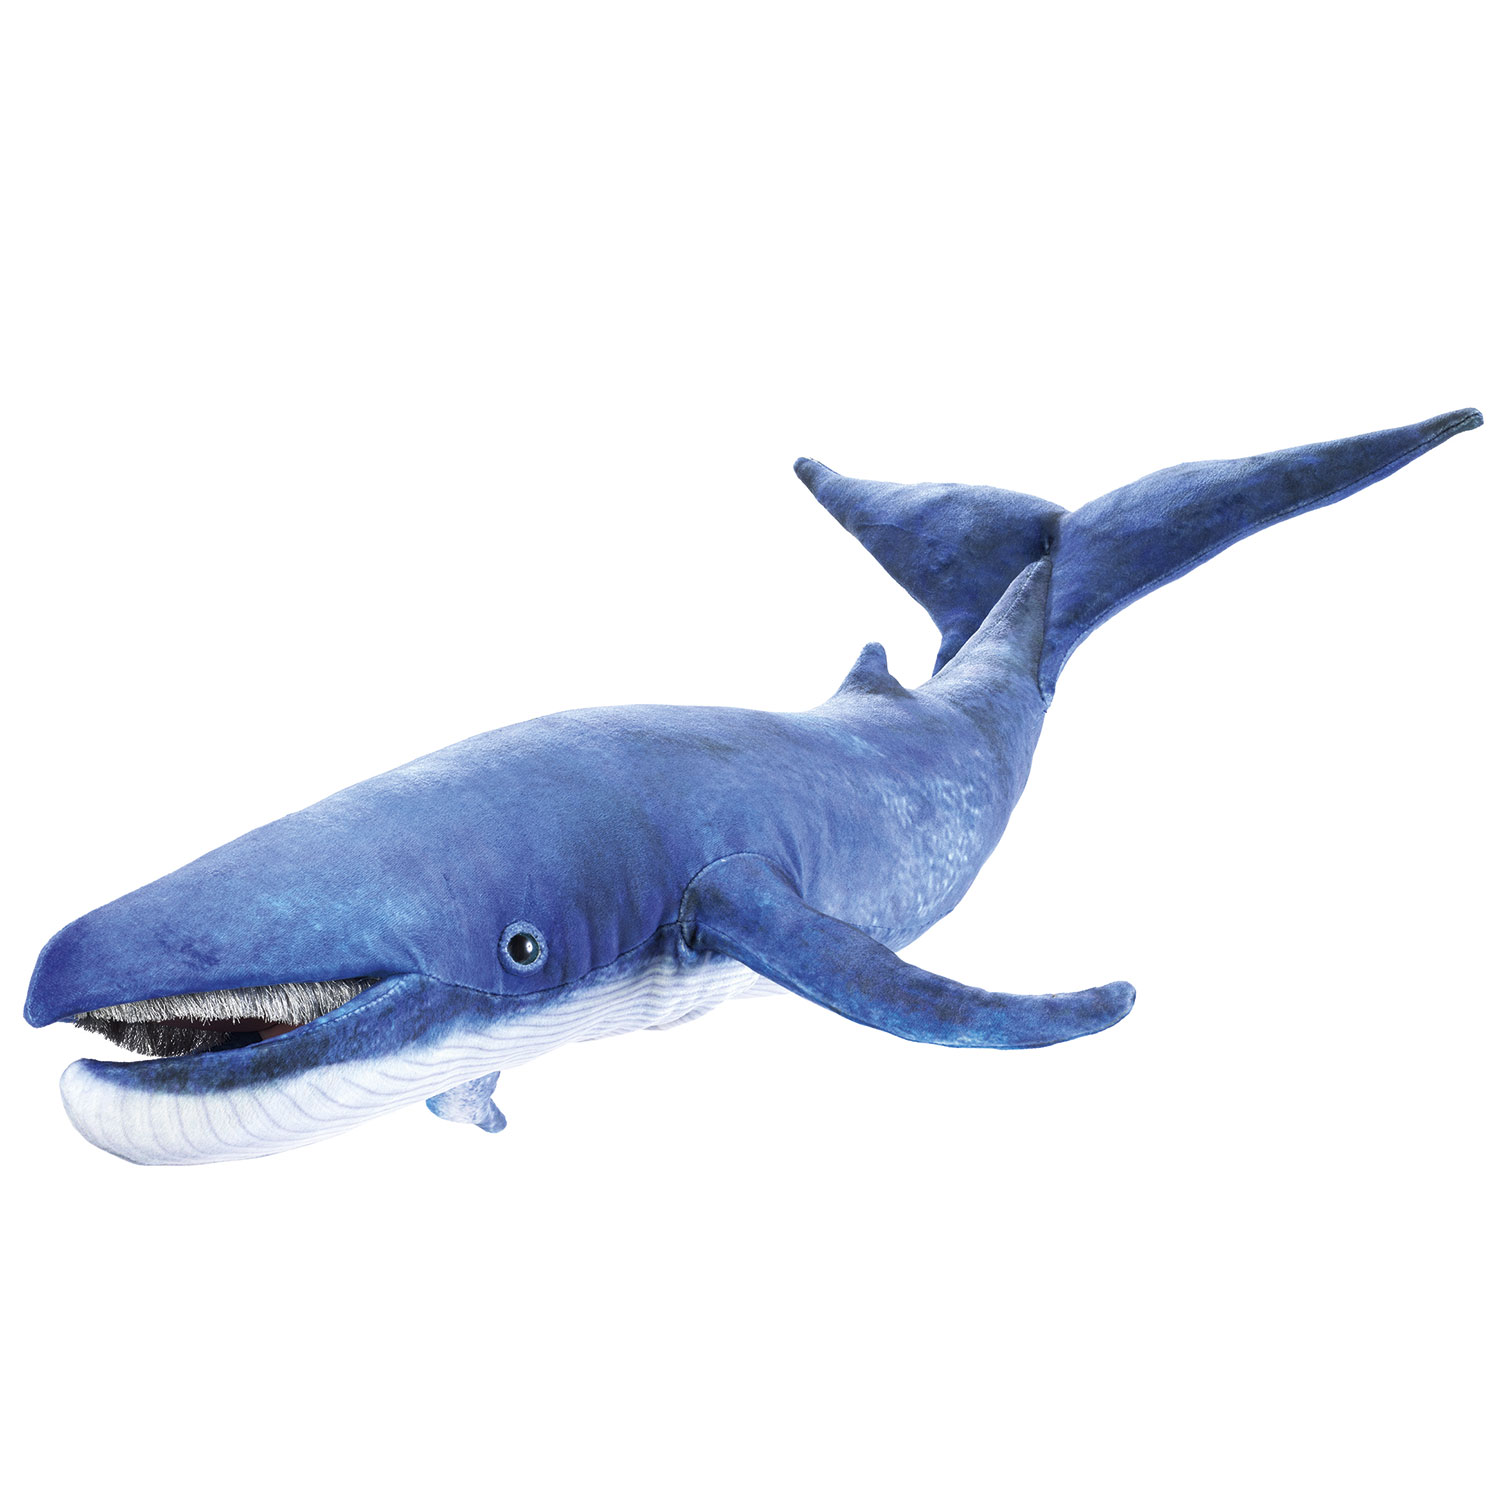 Blauwal / Blue whale